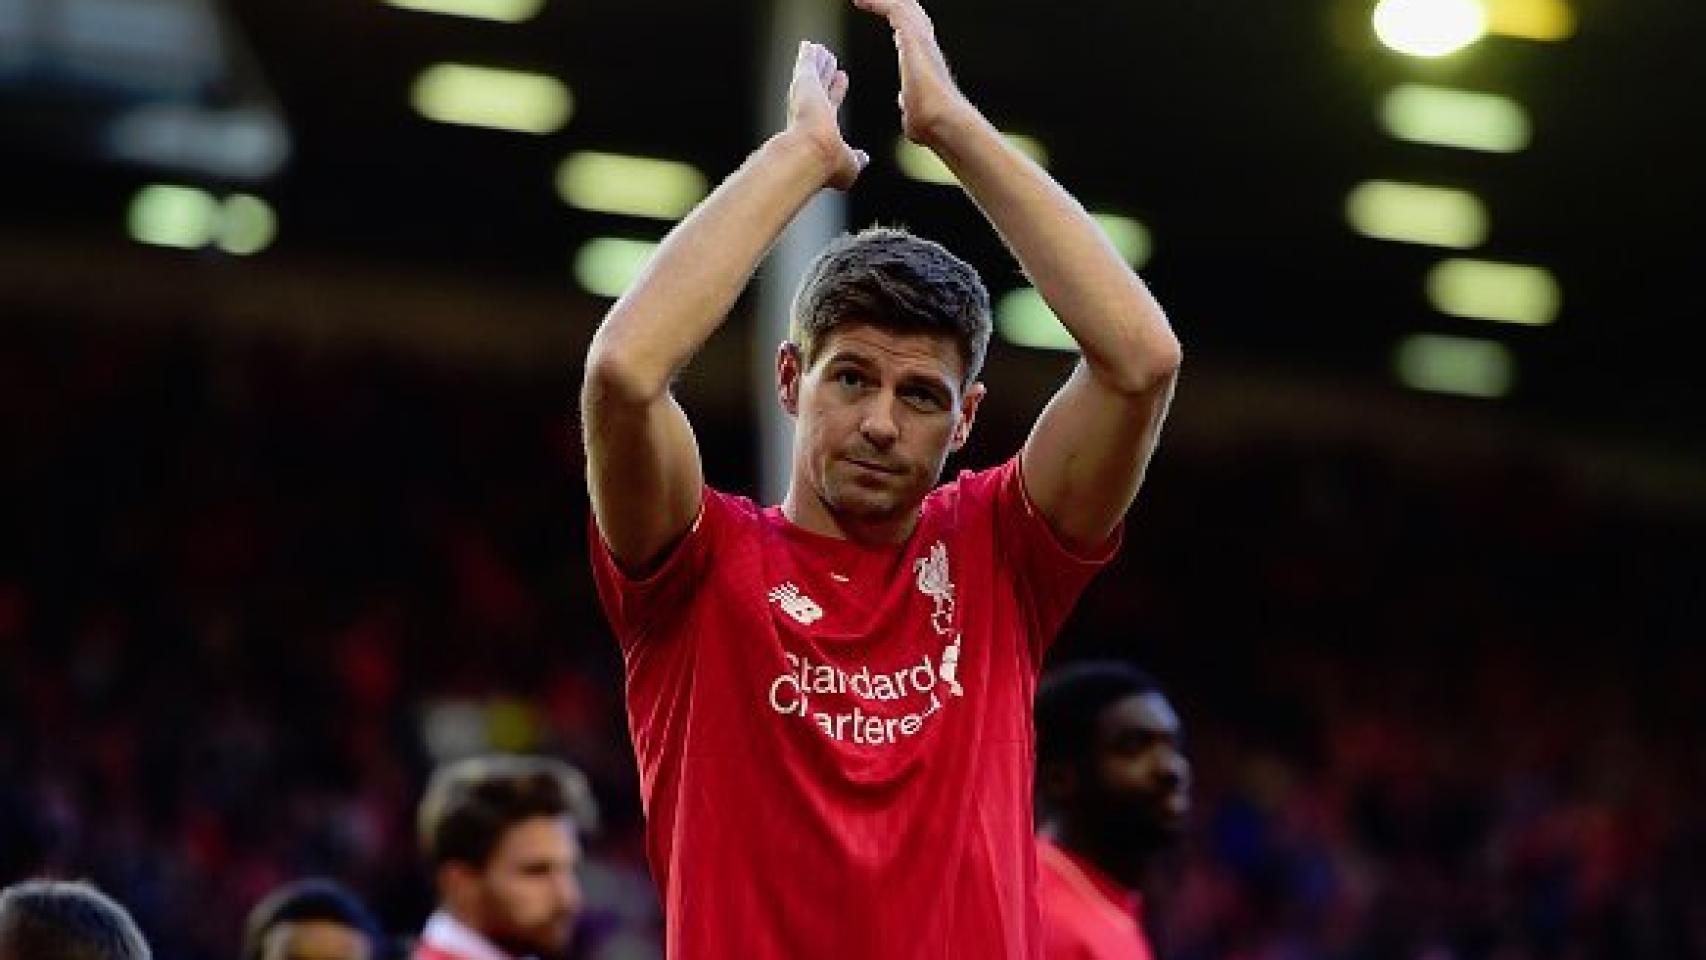 Steven Gerrard anuncia su retirada definitiva del fútbol